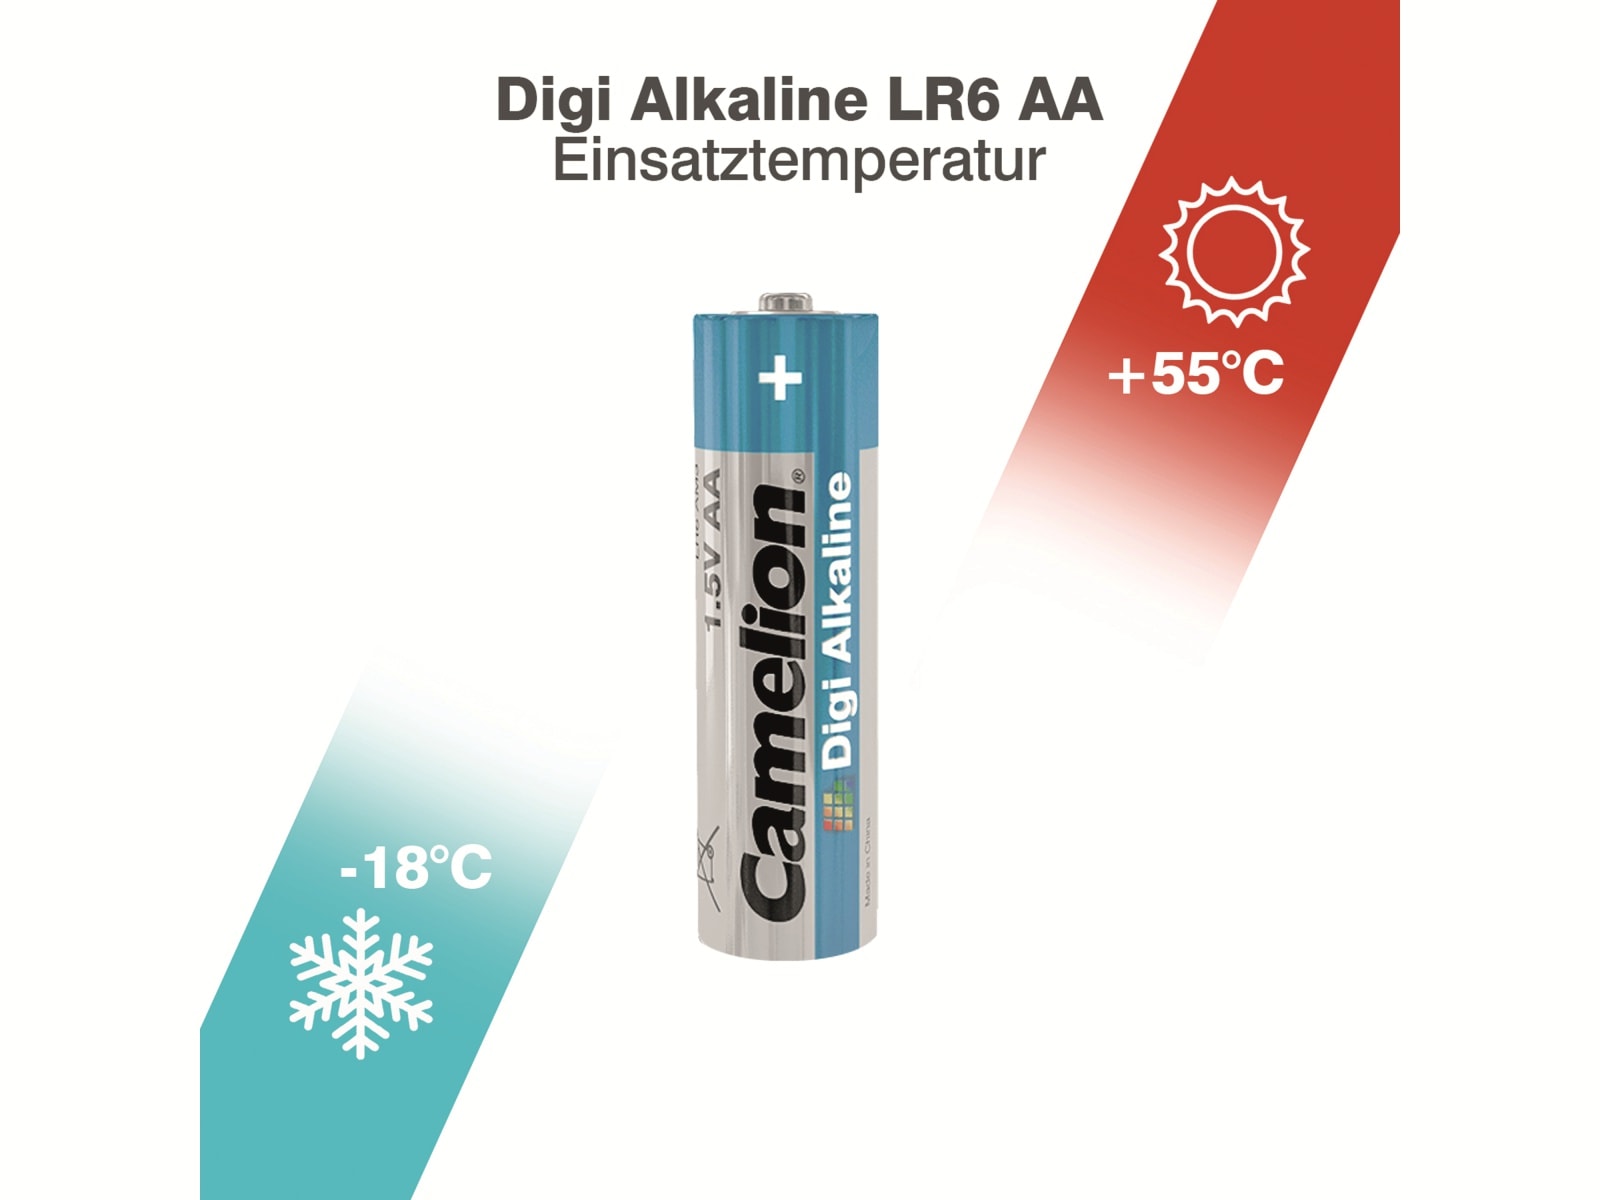 CAMELION Mignon-Batterie, Digi-Alkaline, LR6, 4 Stück